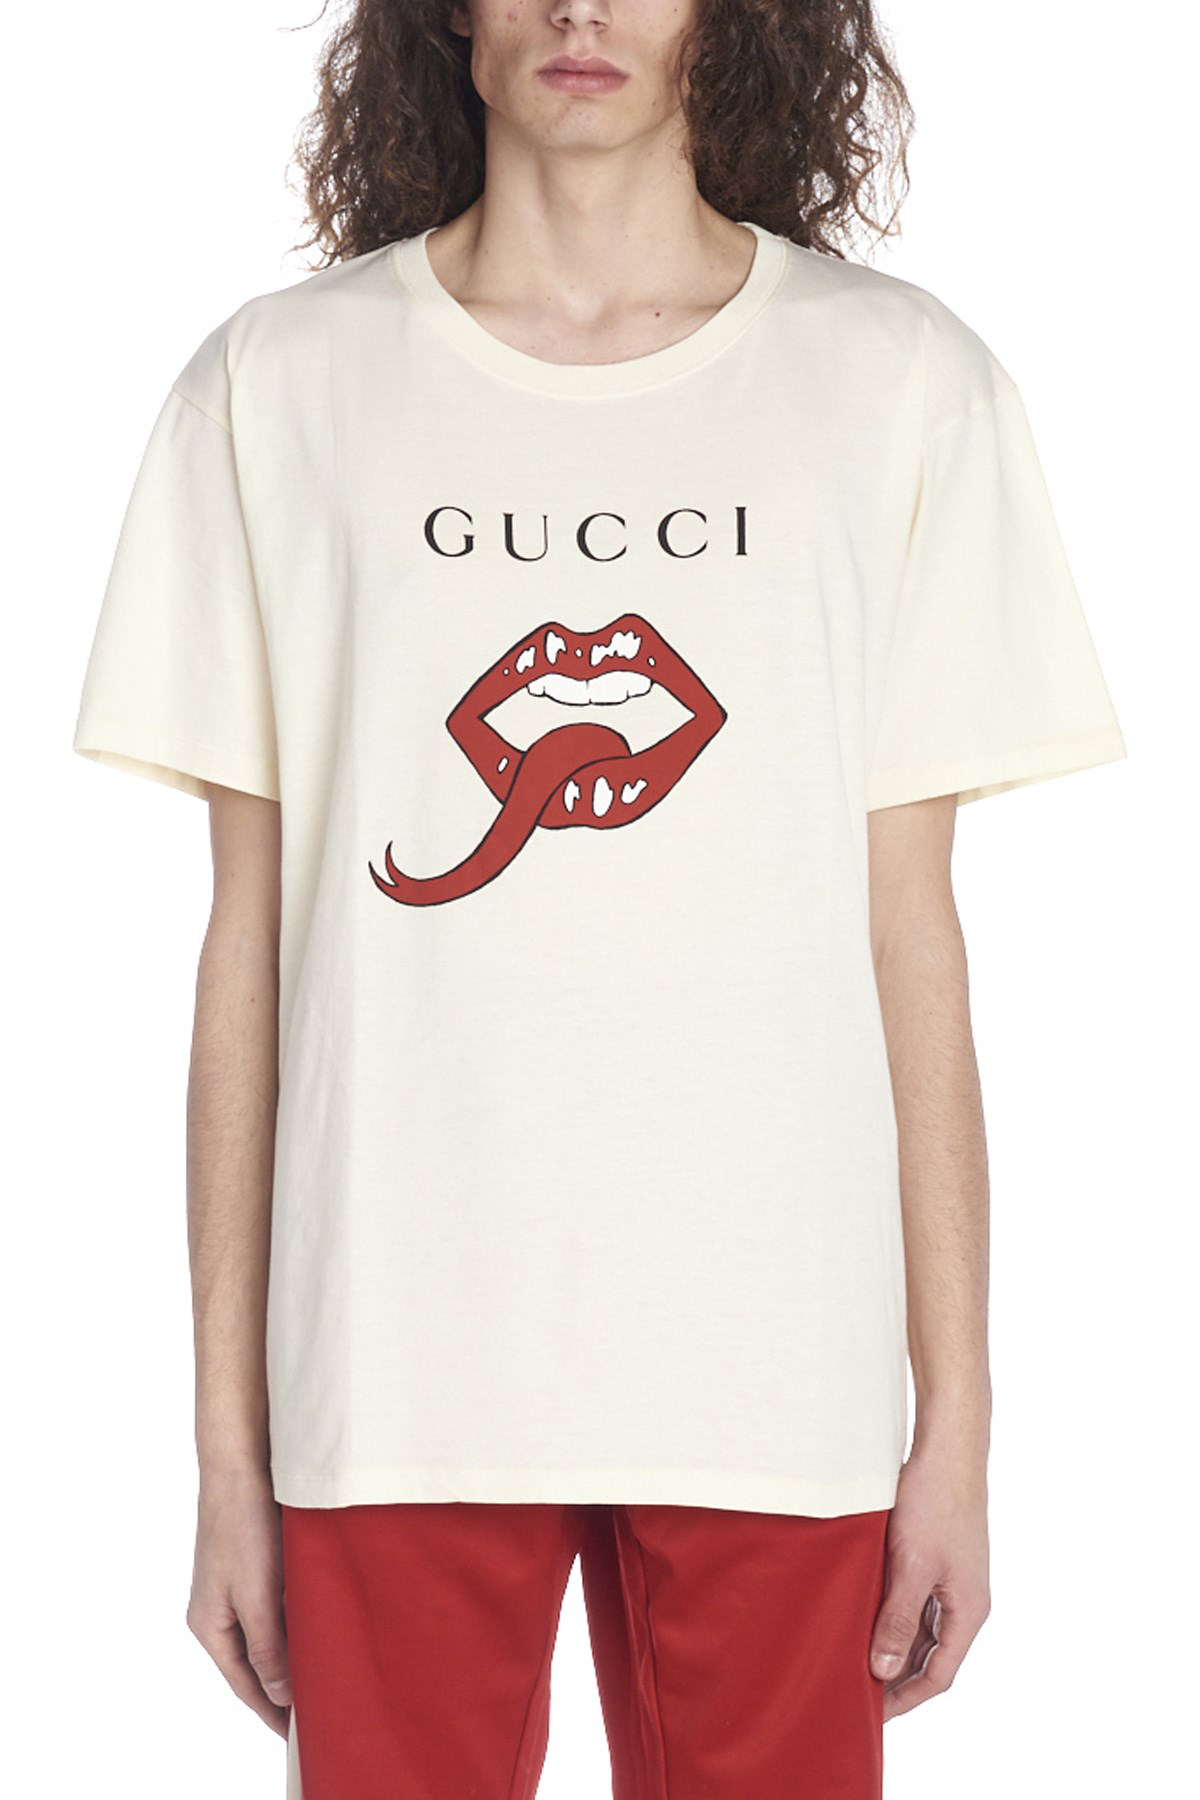 gucci tongue t shirt